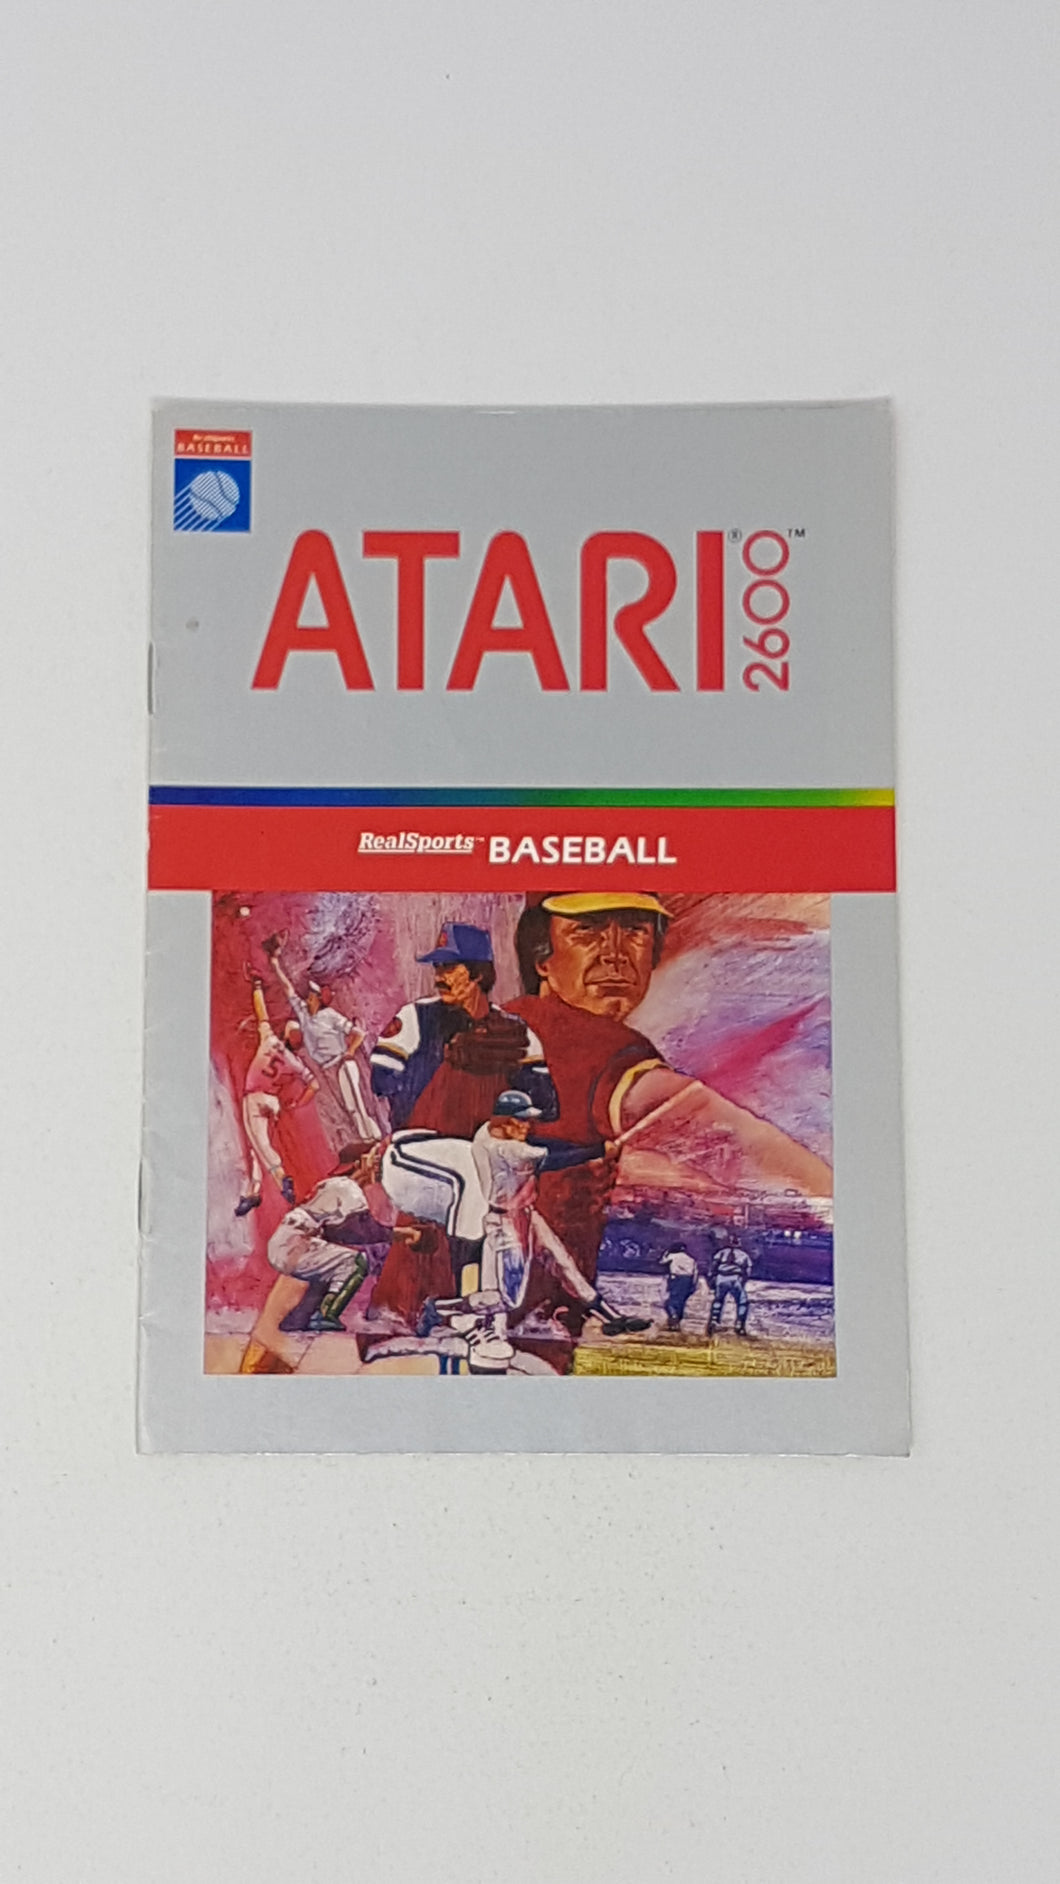 RealSports Baseball [manual] - Atari2600